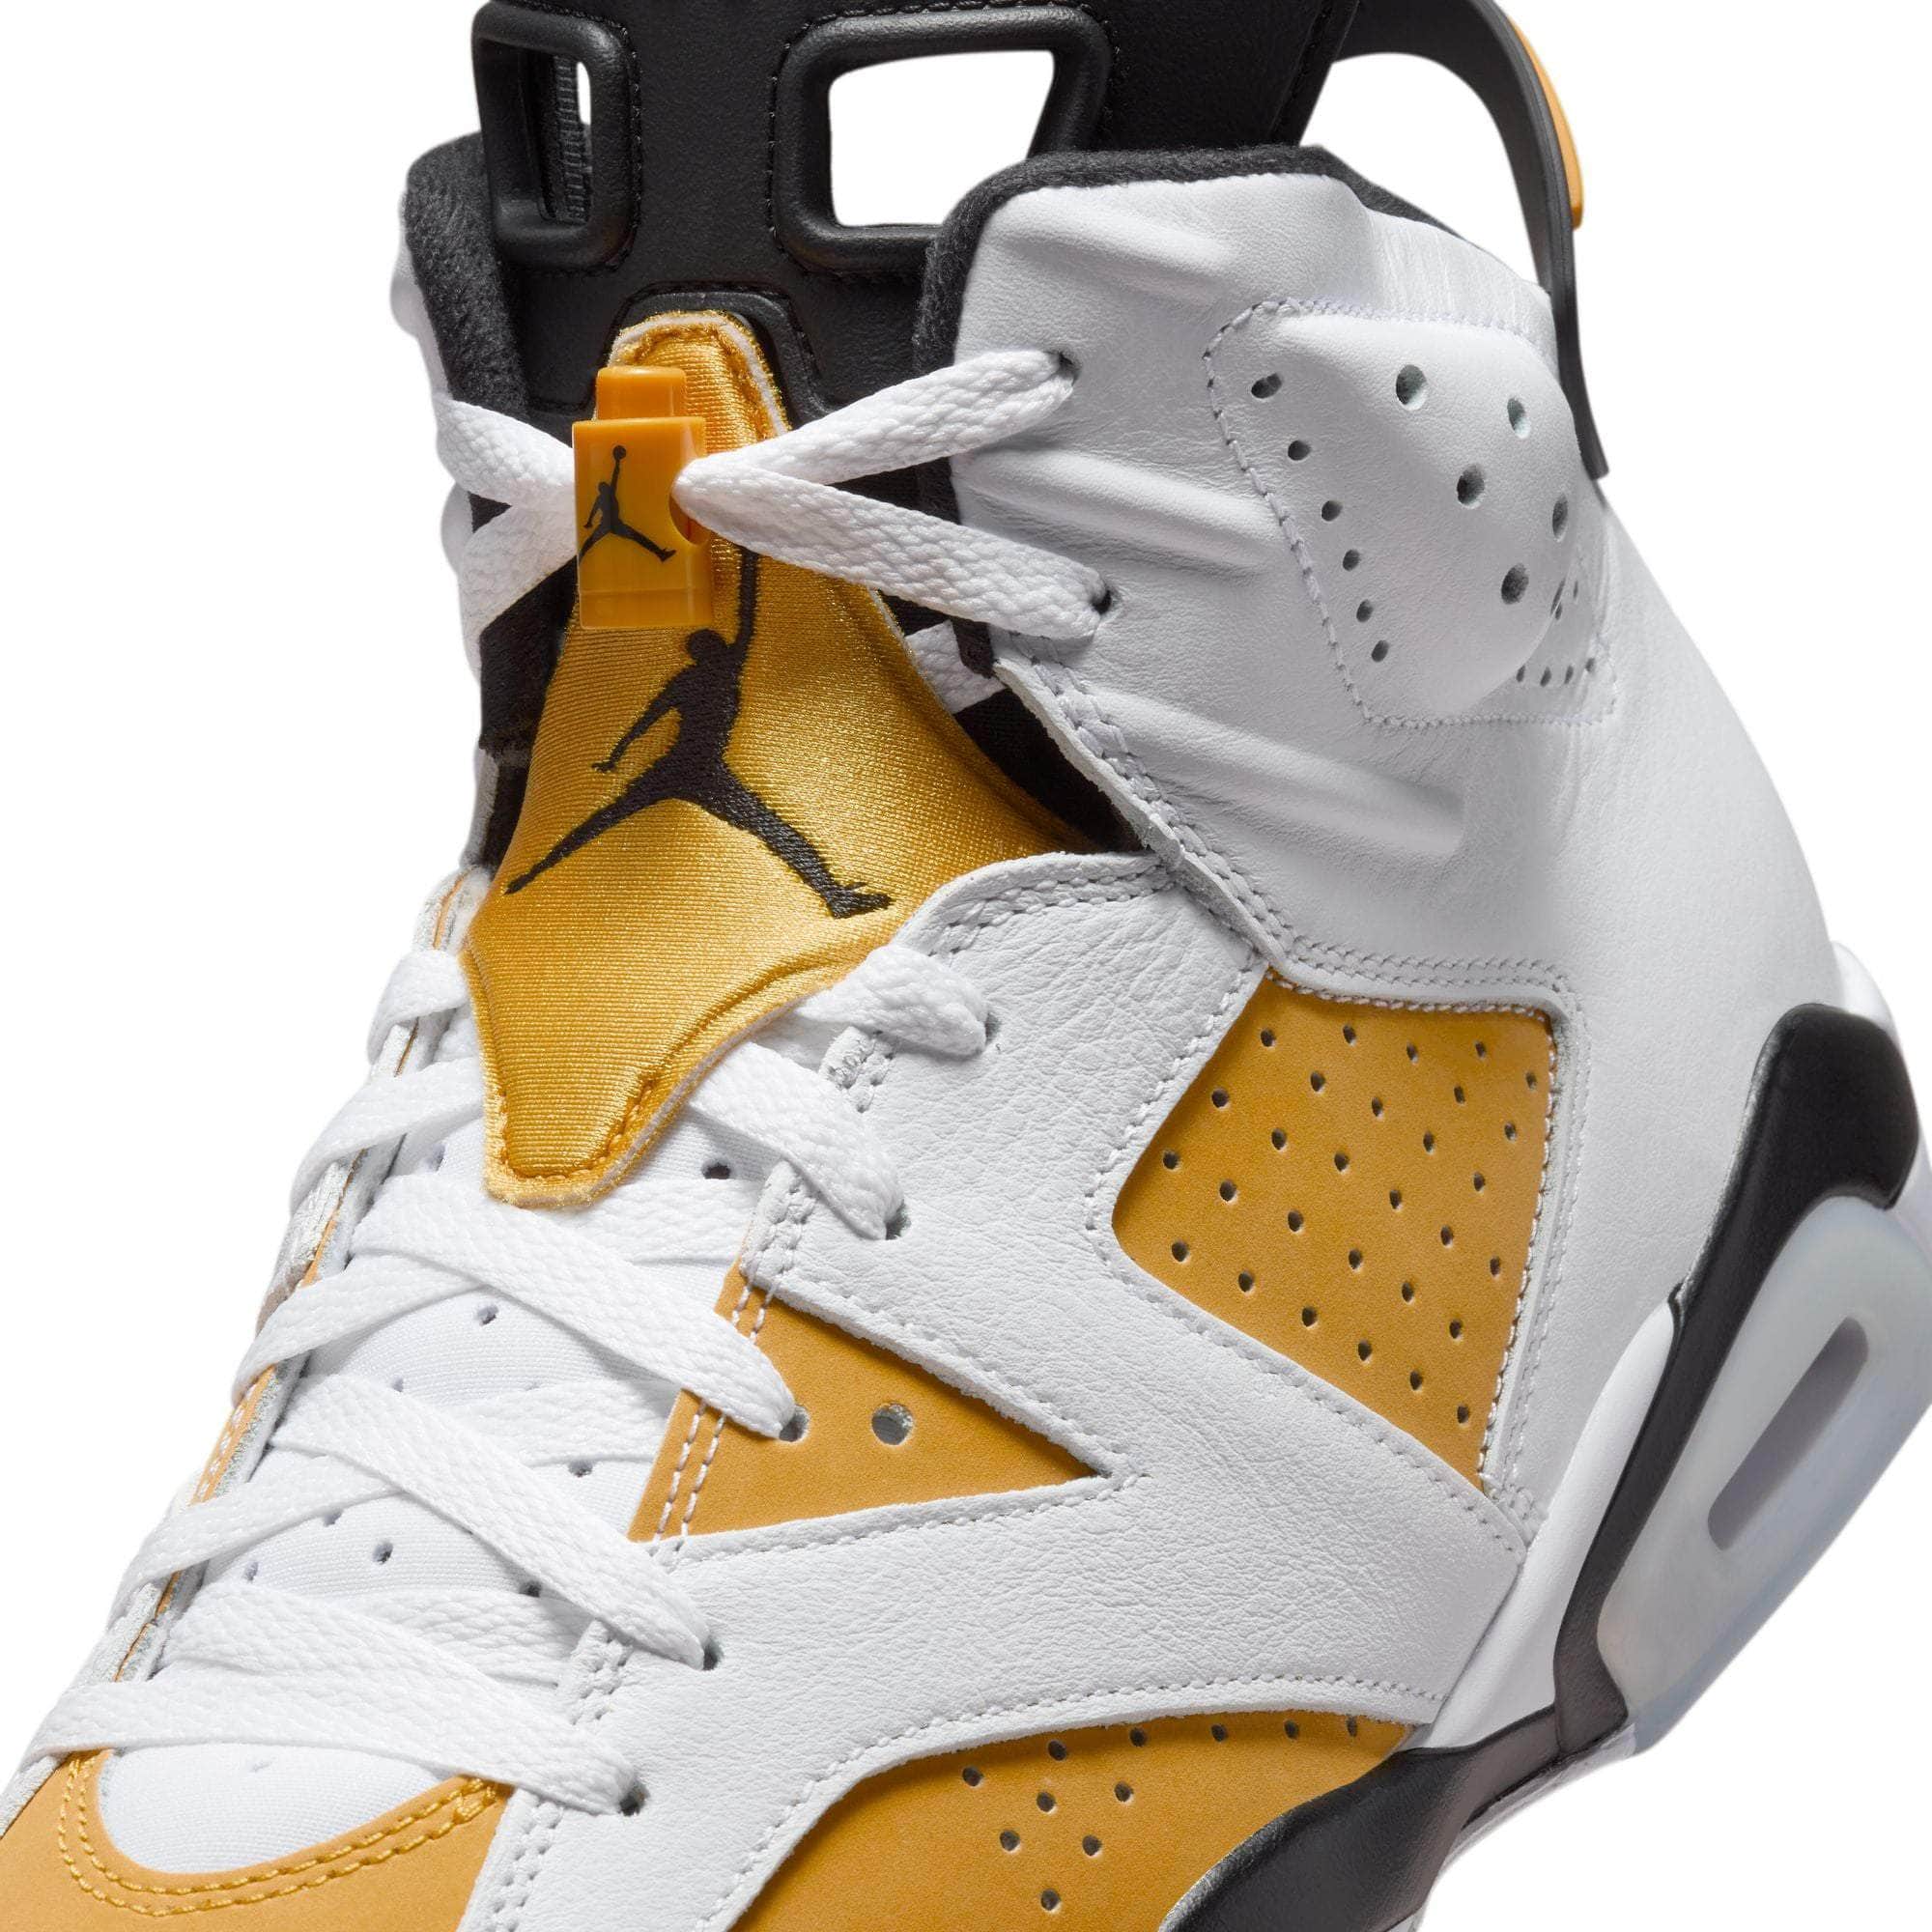 Air Jordan FOOTWEAR Air Jordan 6 Retro “Yellow Ochre” - Men's